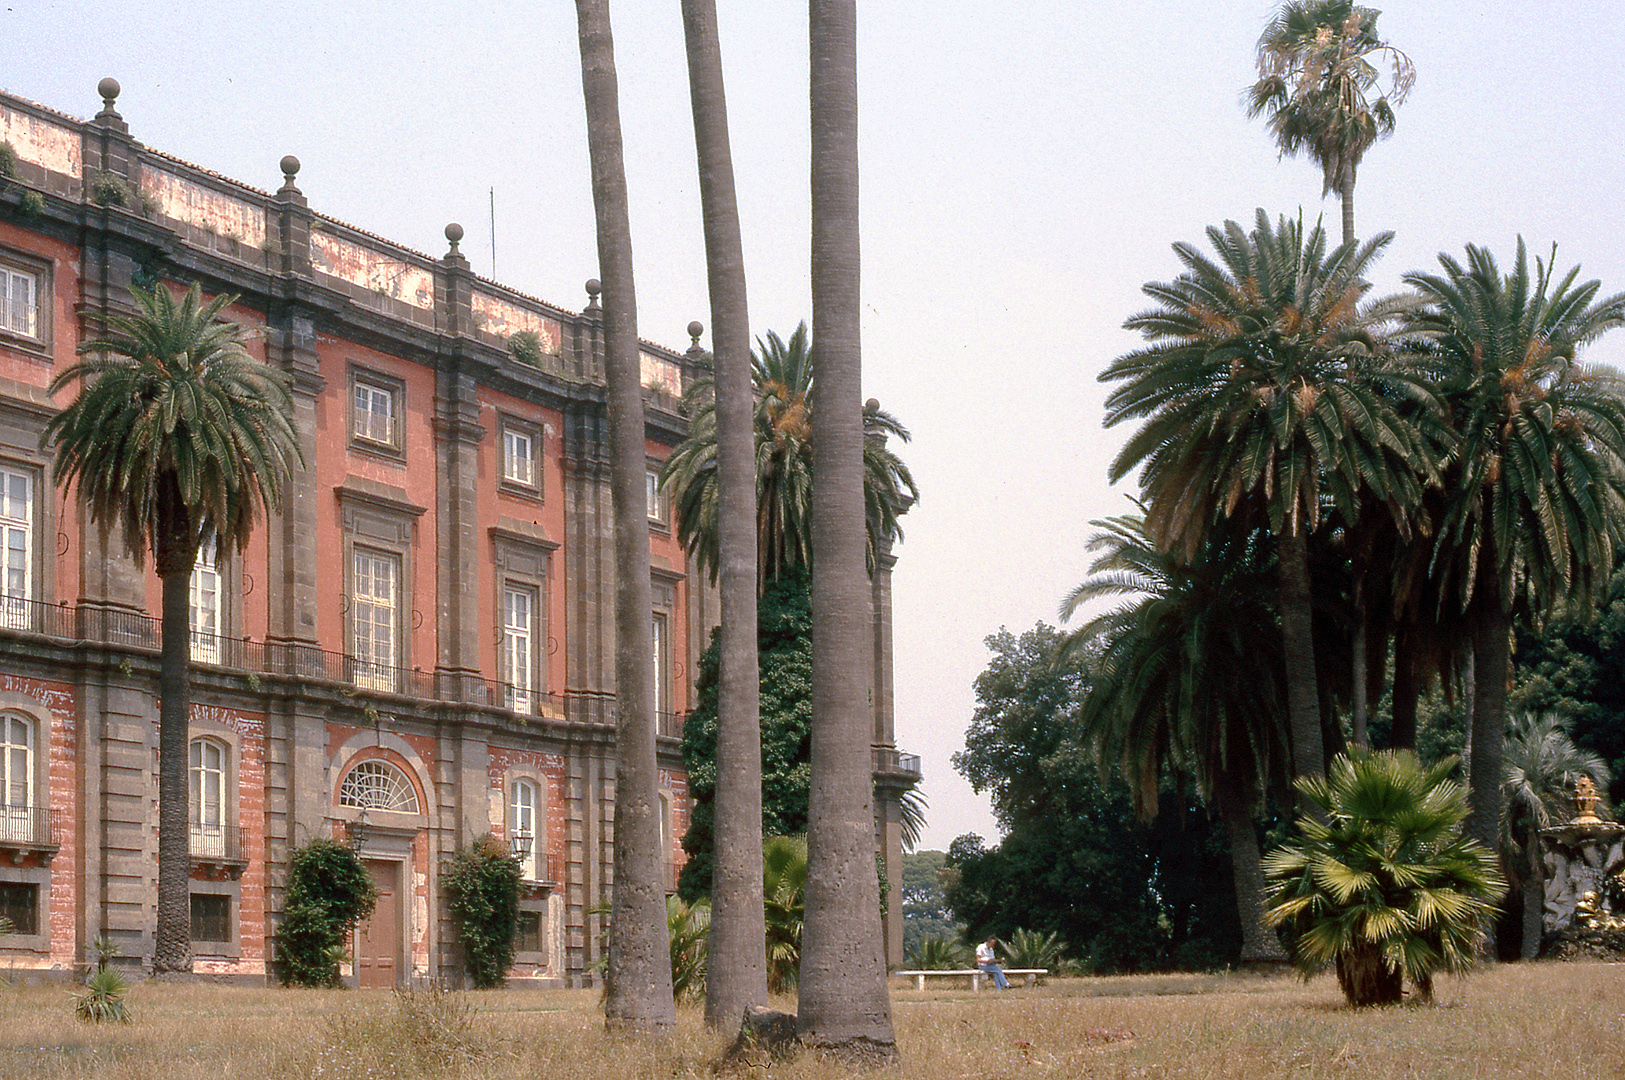 Paleis van Capodimonte, Napels (Campani), Palace of Capodimonte, Naples (Campania, Italy)